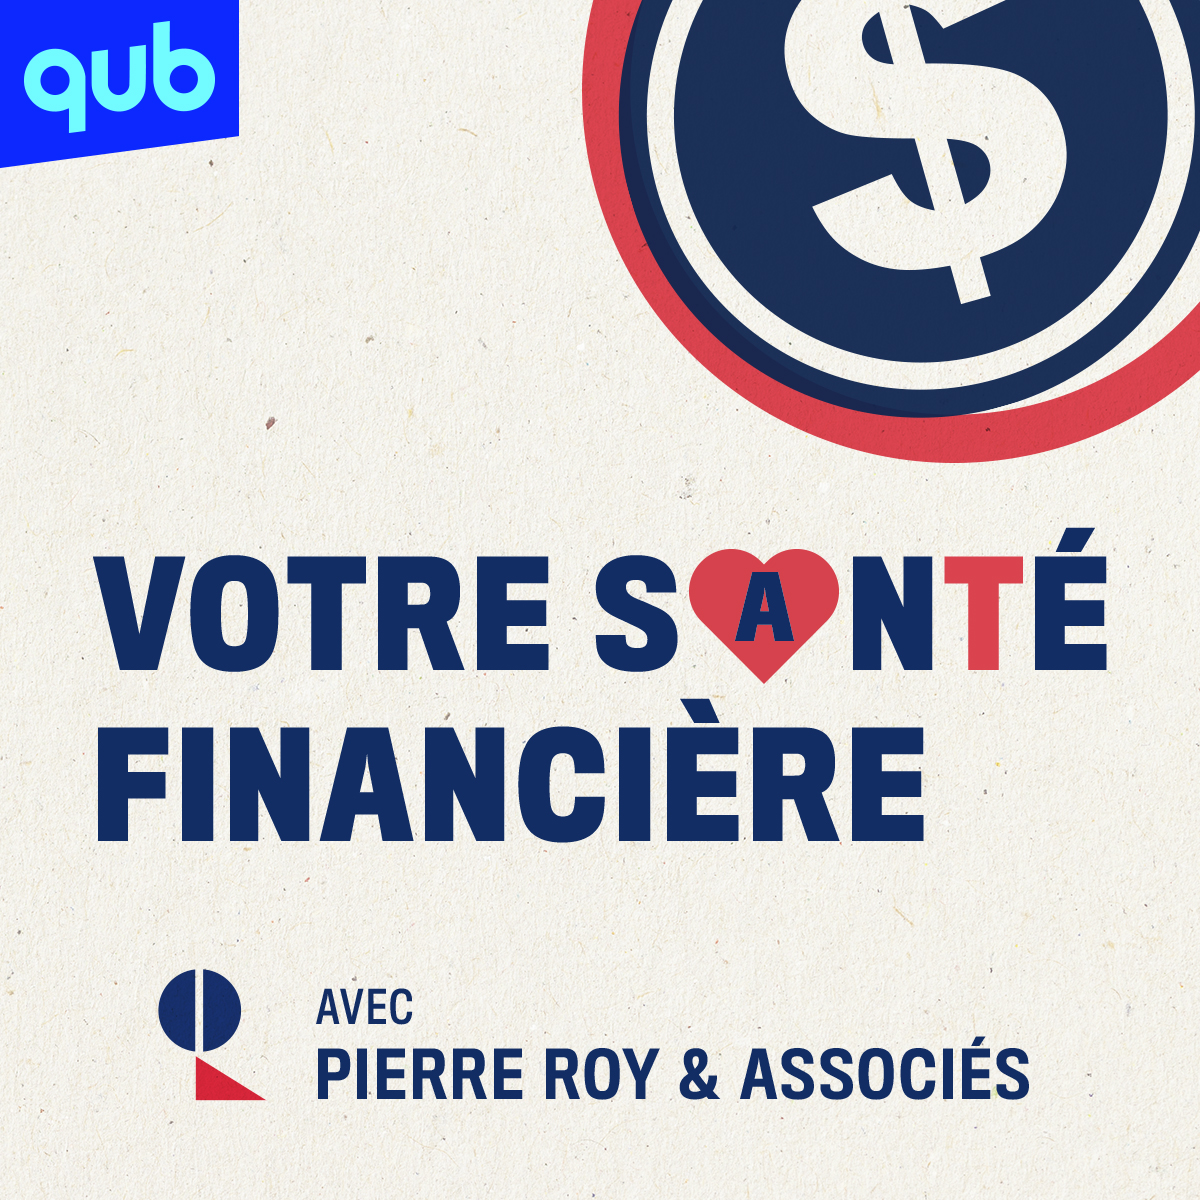 Bande-annonce - Votre santé financière avec Pierre Roy & Associés